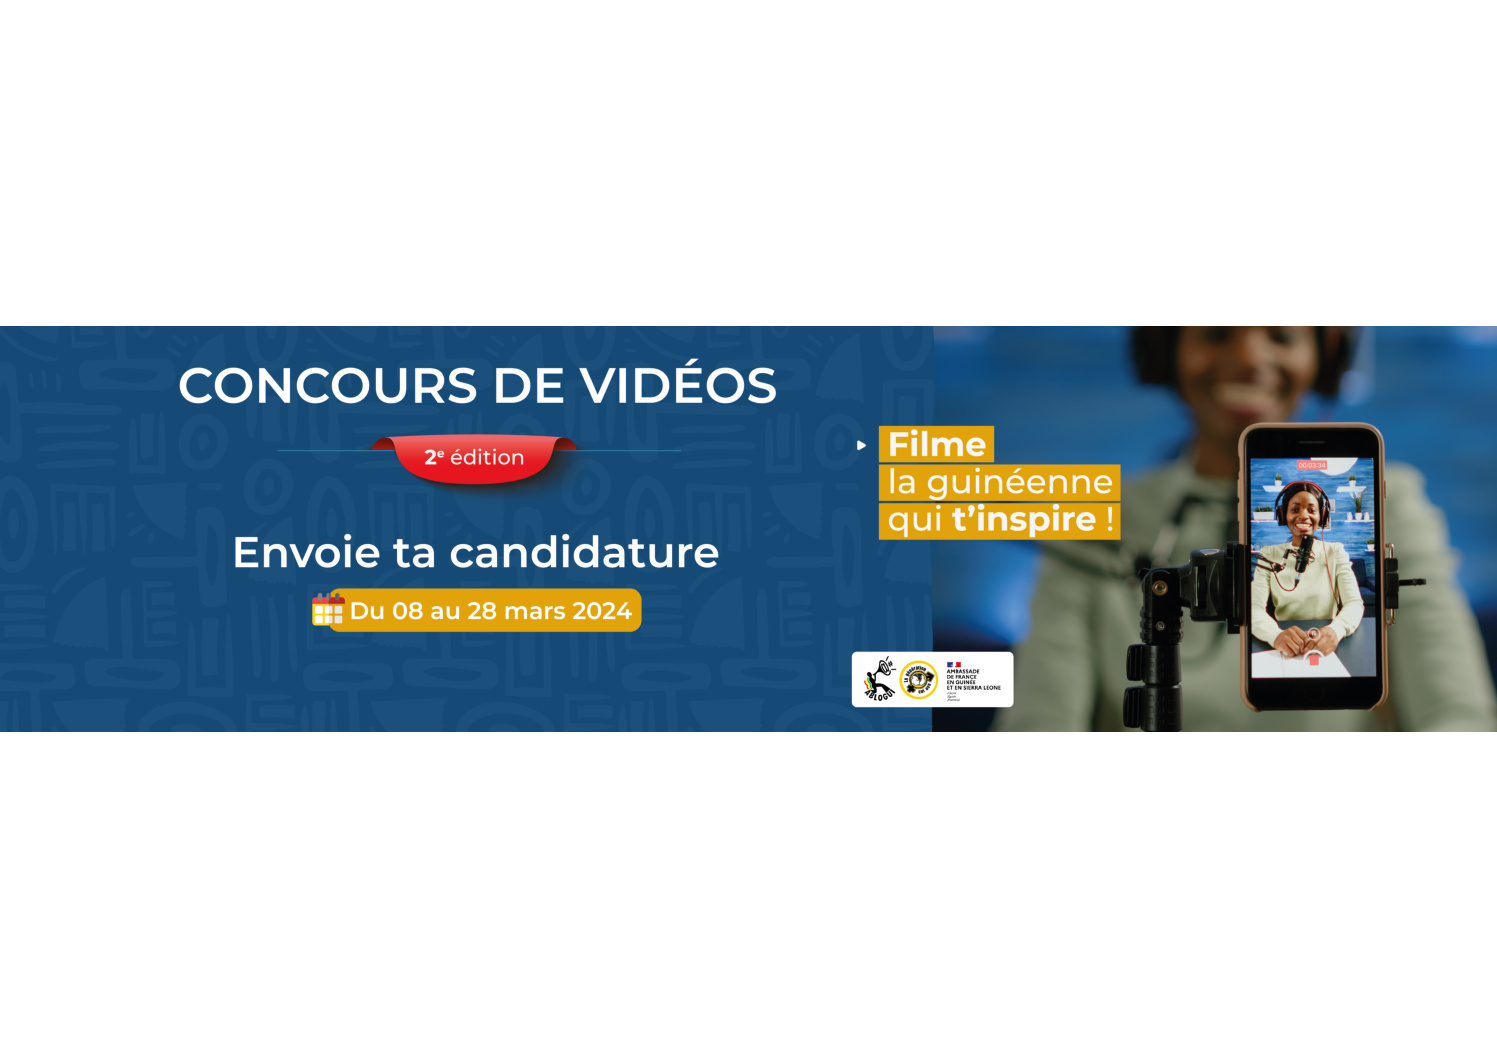 Les questions les plus fréquentes sur le concours vidéos ‘’Filme la guinéenne qui t’inspire’’